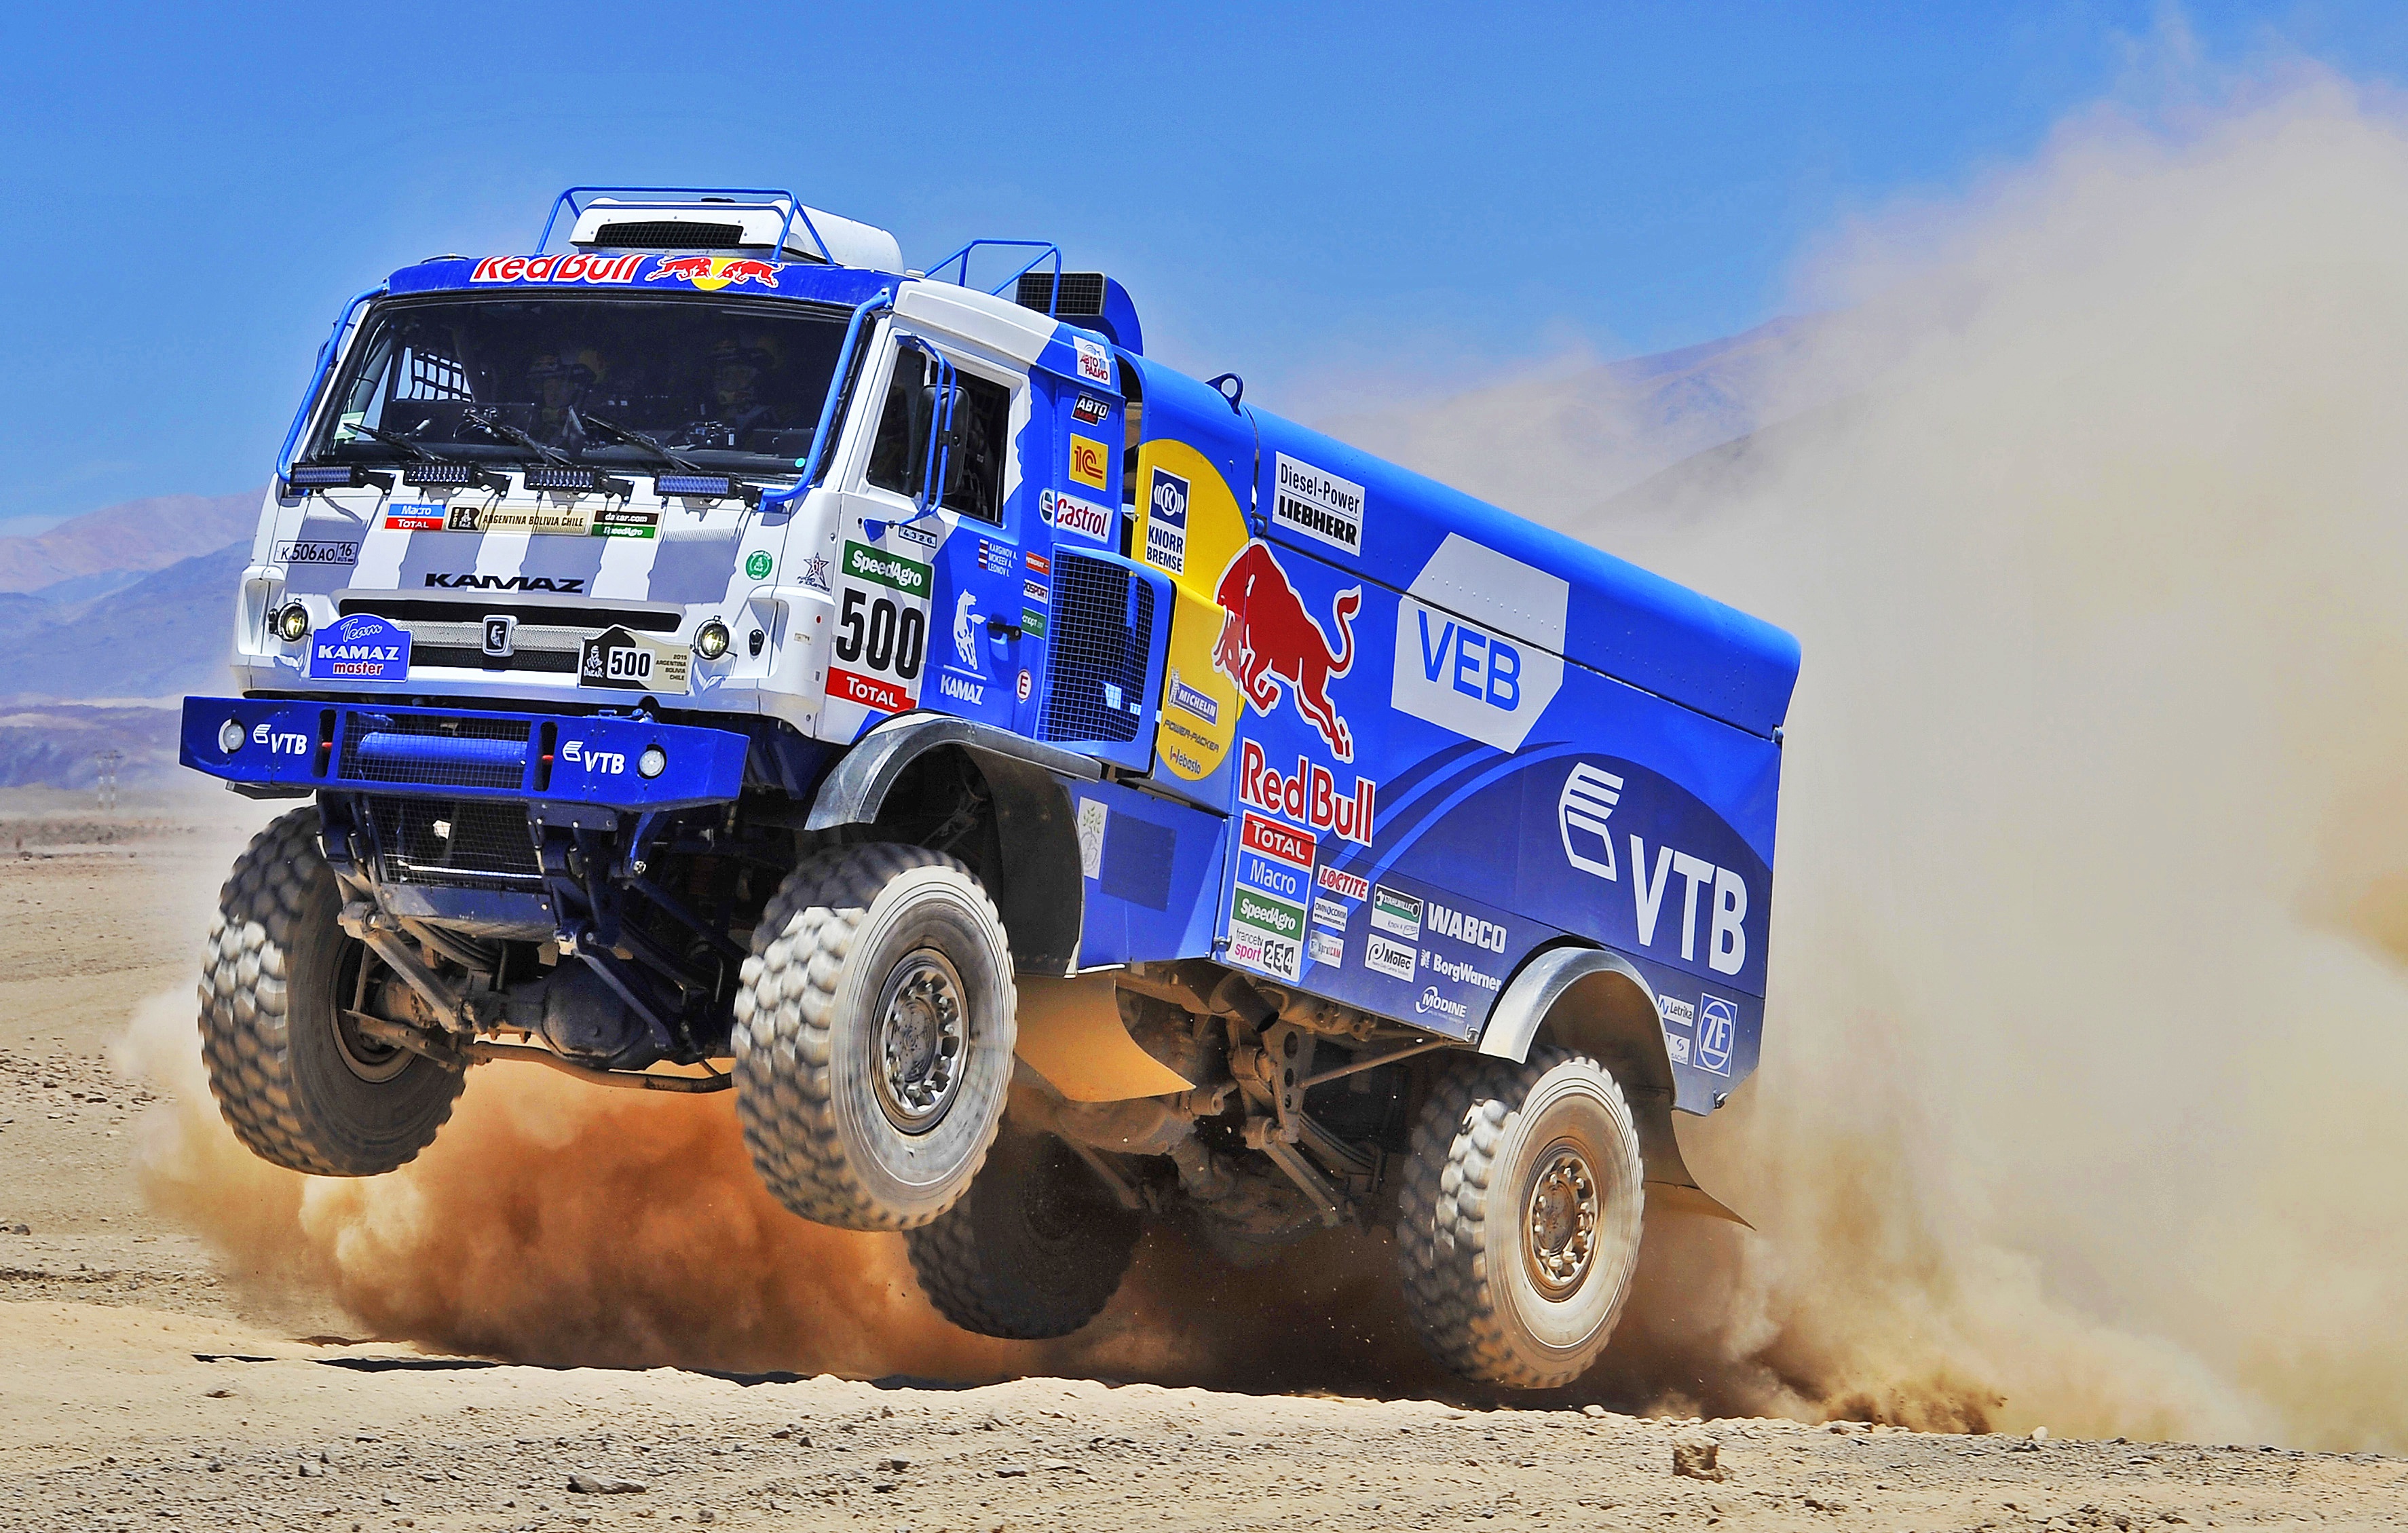 Kamaz Rallying Red Bull Sand Truck Vehicle 3548x2259